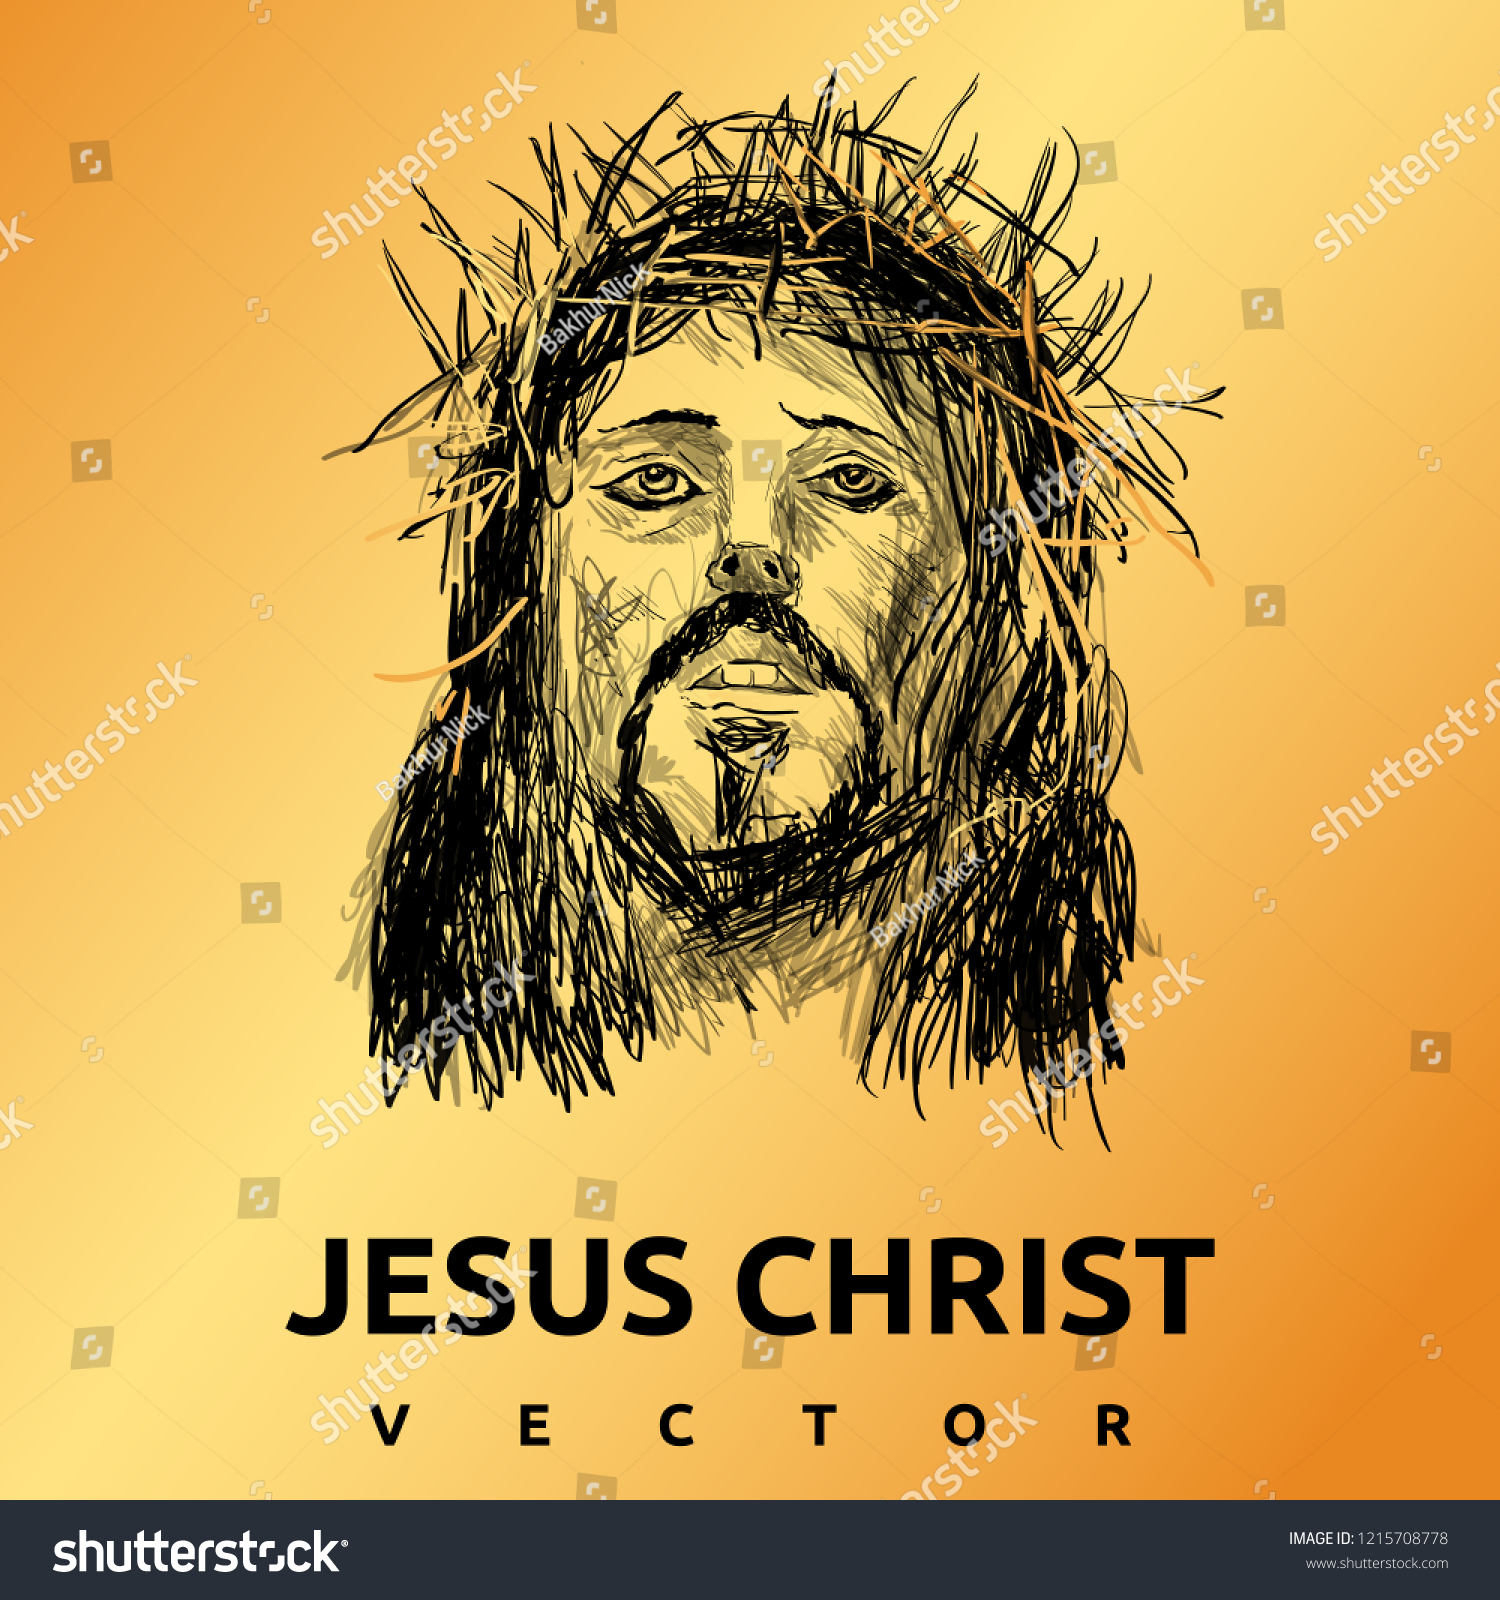 20,581 Bible spirit Stock Vectors, Images & Vector Art | Shutterstock